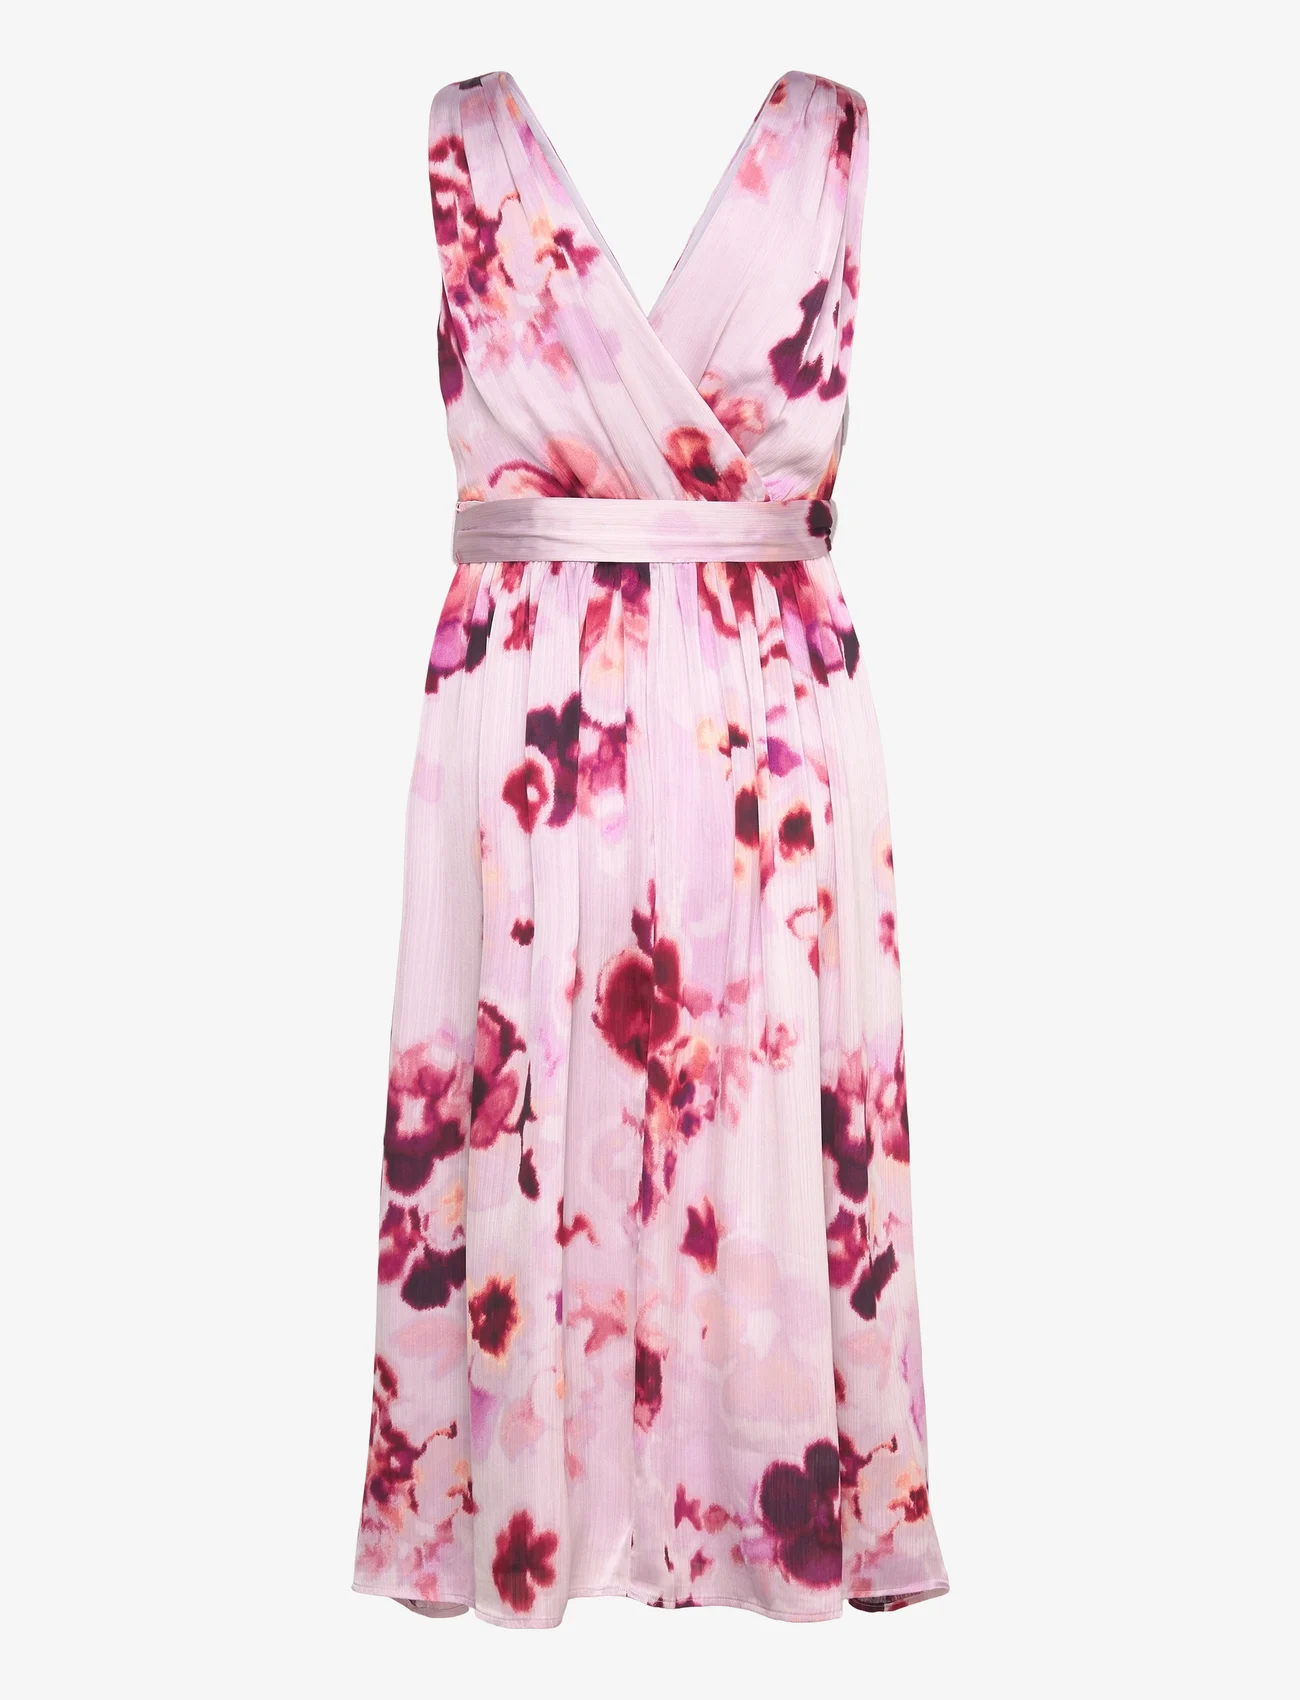 Esprit Casual - Dresses light woven - sukienki do kolan i midi - lavender 2 - 1